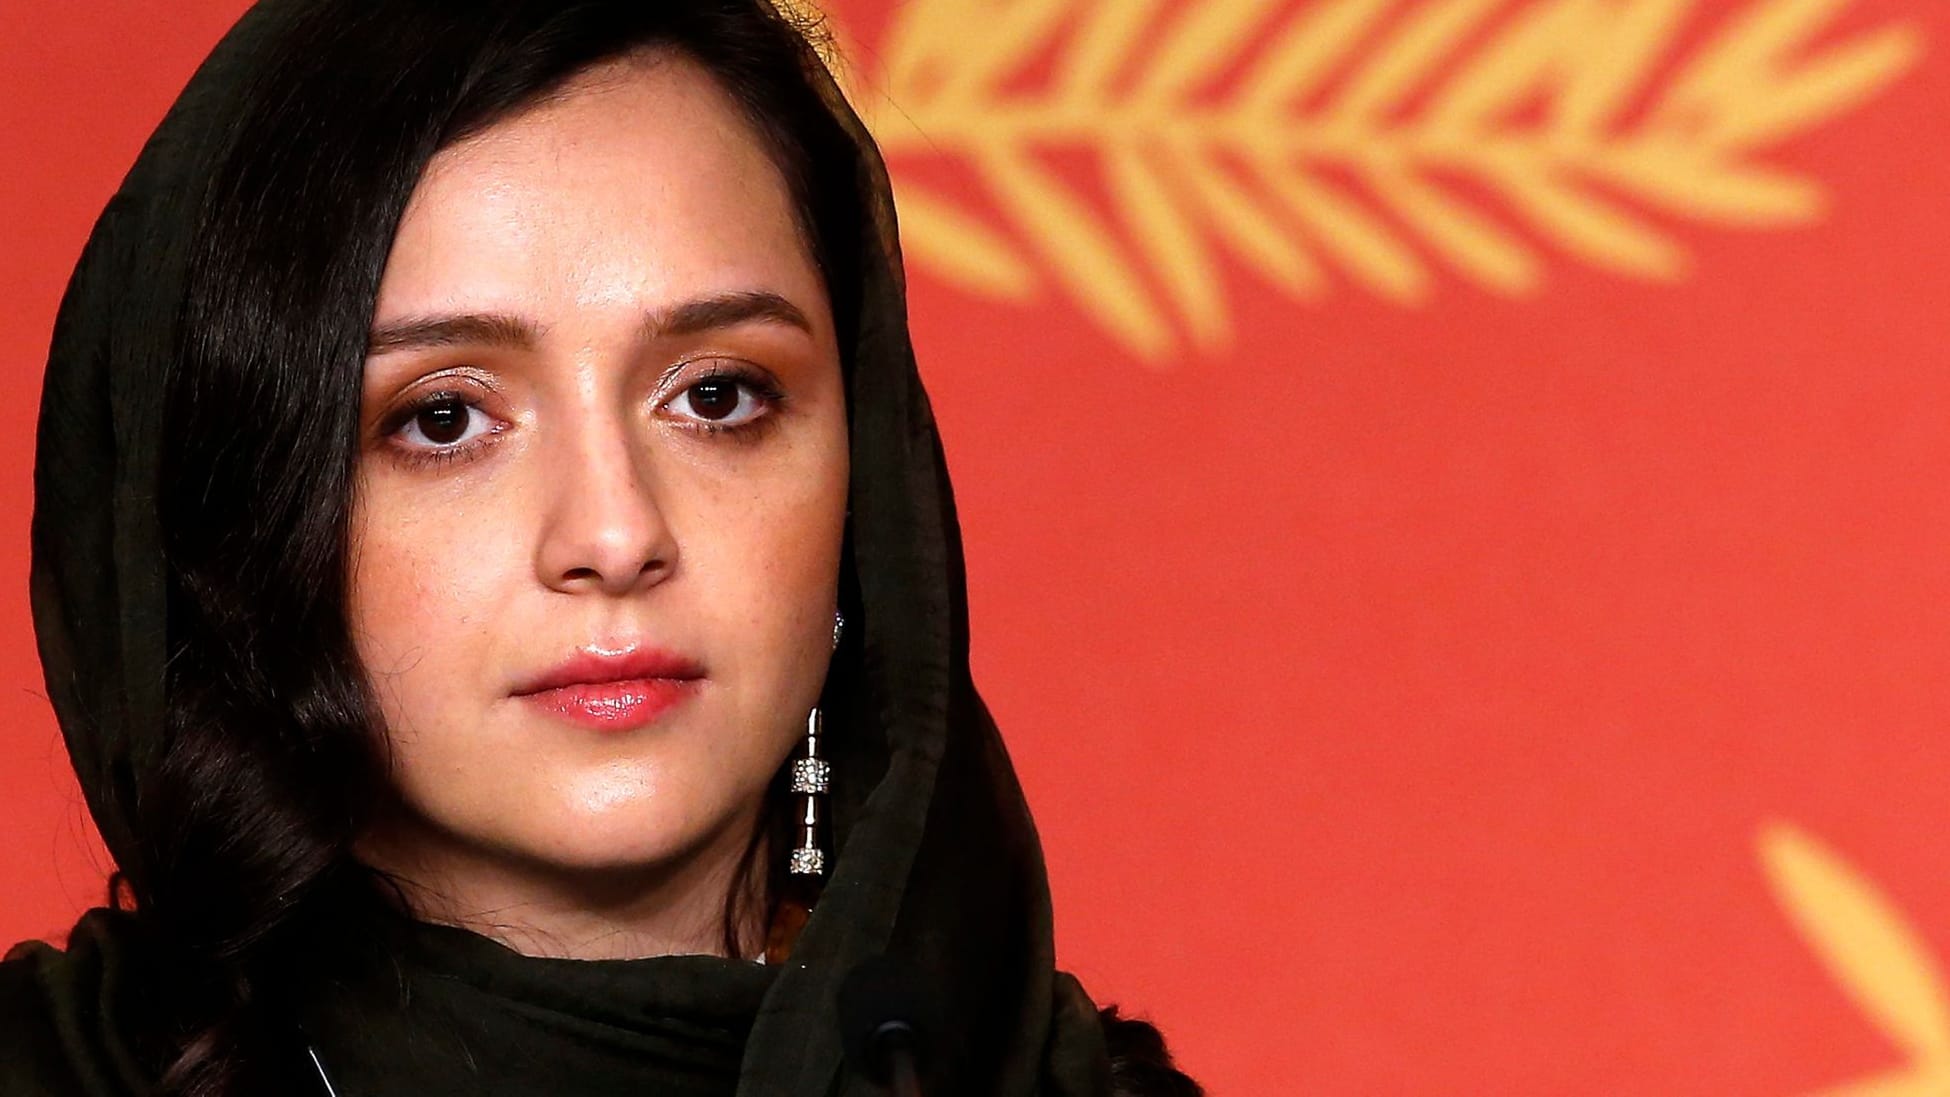 Mutiges Foto: Schauspielerin Taraneh Alidoosti setzt Zeichen gegen das iranische Regime